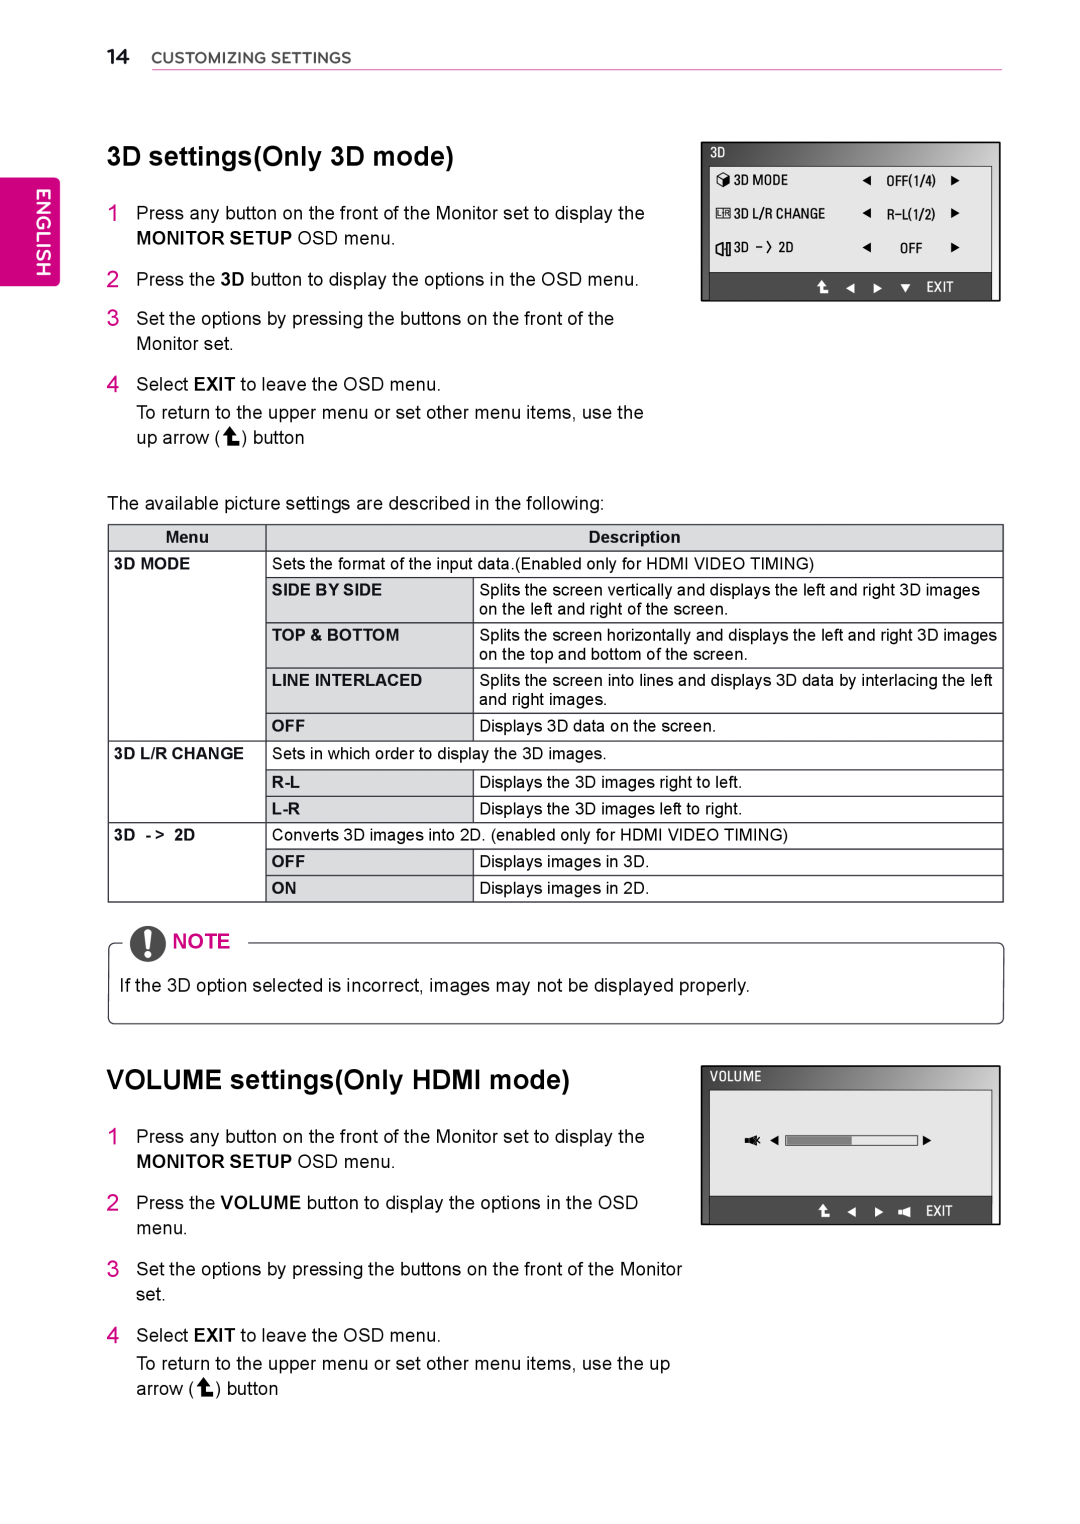 LG Electronics D2342P owner manual 3D settingsOnly 3D mode, VOLUME settingsOnly HDMI mode, English, Customizing Settings 